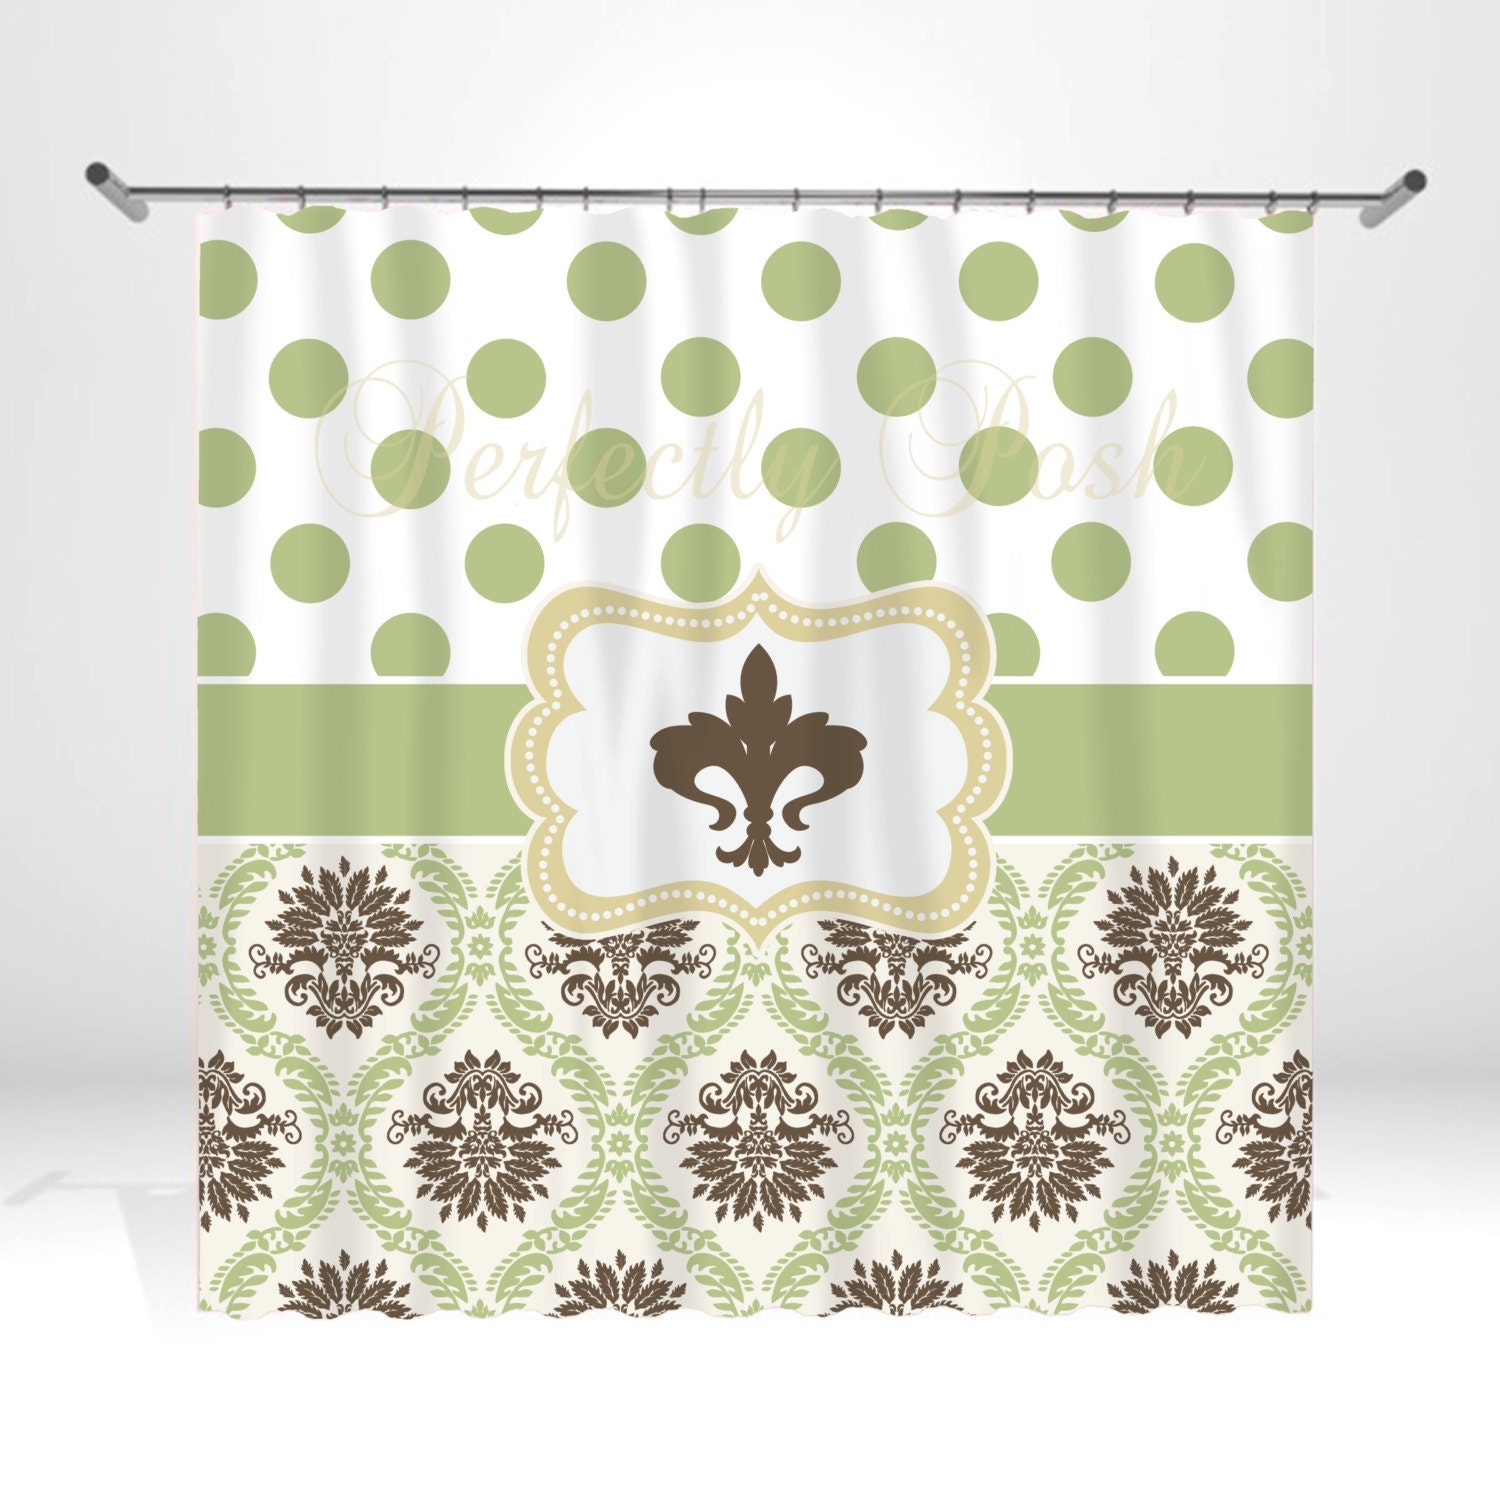 Extra Long Shower Curtain Rod Fleur De Lis Towels